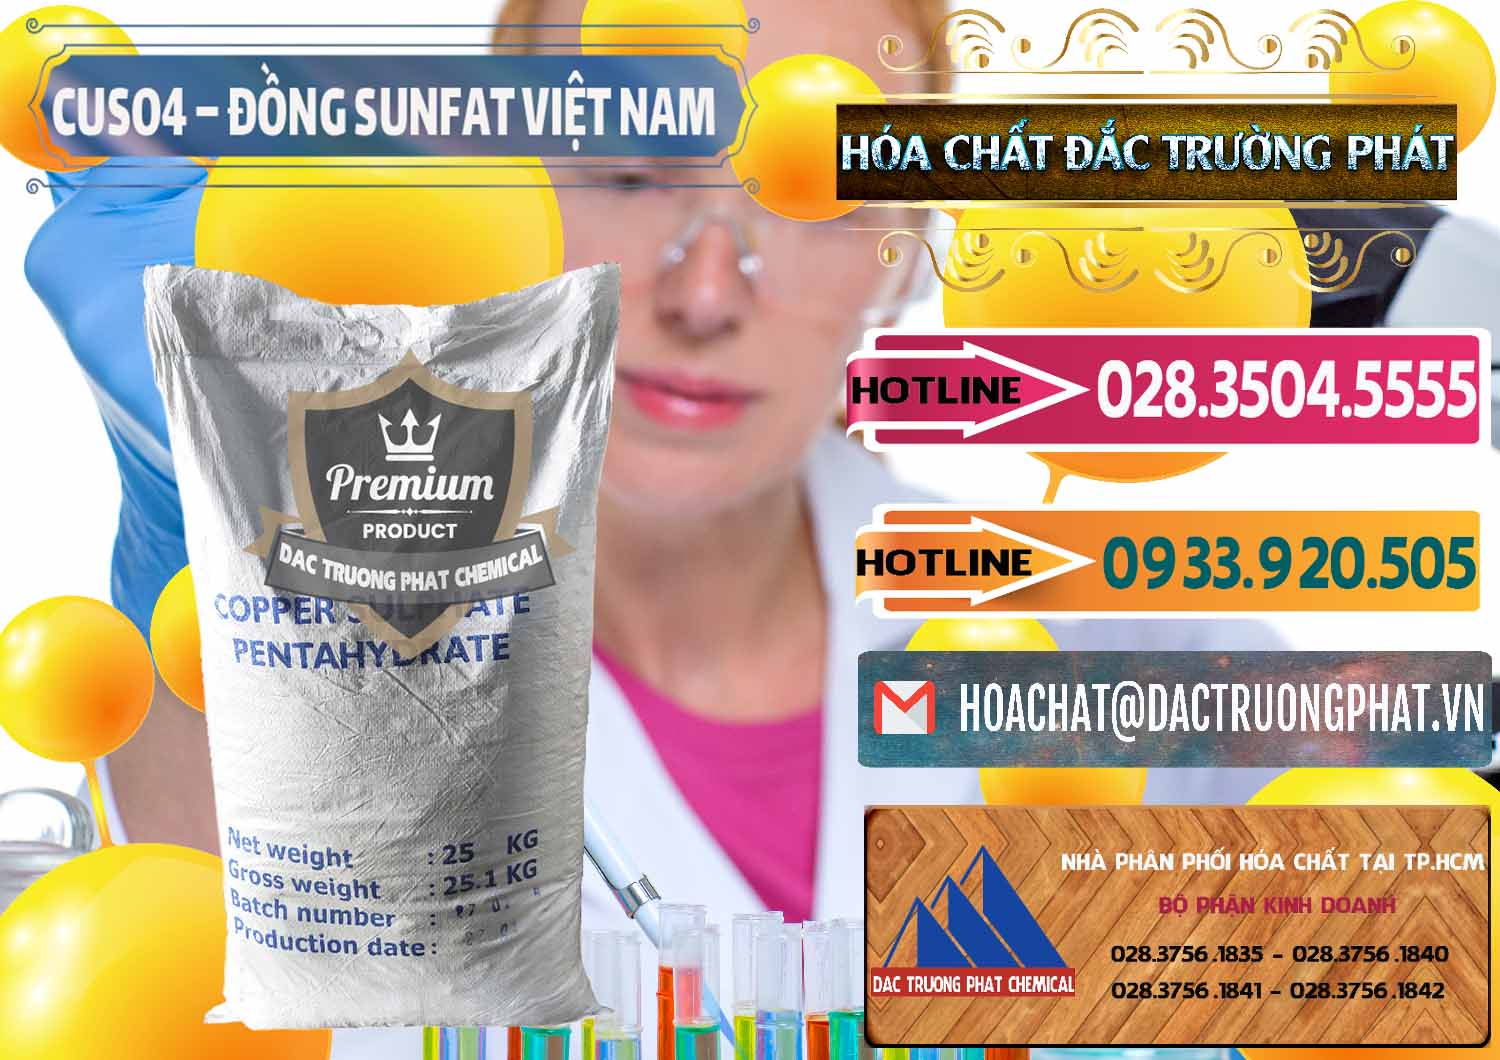 Nơi chuyên bán ( cung cấp ) CuSO4 – Đồng Sunfat Dạng Bột Việt Nam - 0196 - Cty cung cấp _ bán hóa chất tại TP.HCM - dactruongphat.vn